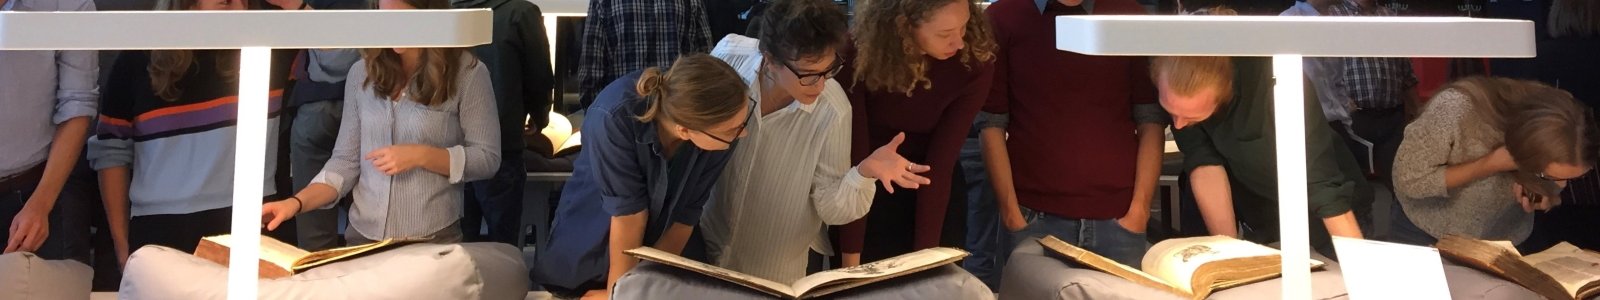 Studenten krijgen een werkcollege in de kaartenzaal van de Universiteitsbibliotheek Utrecht